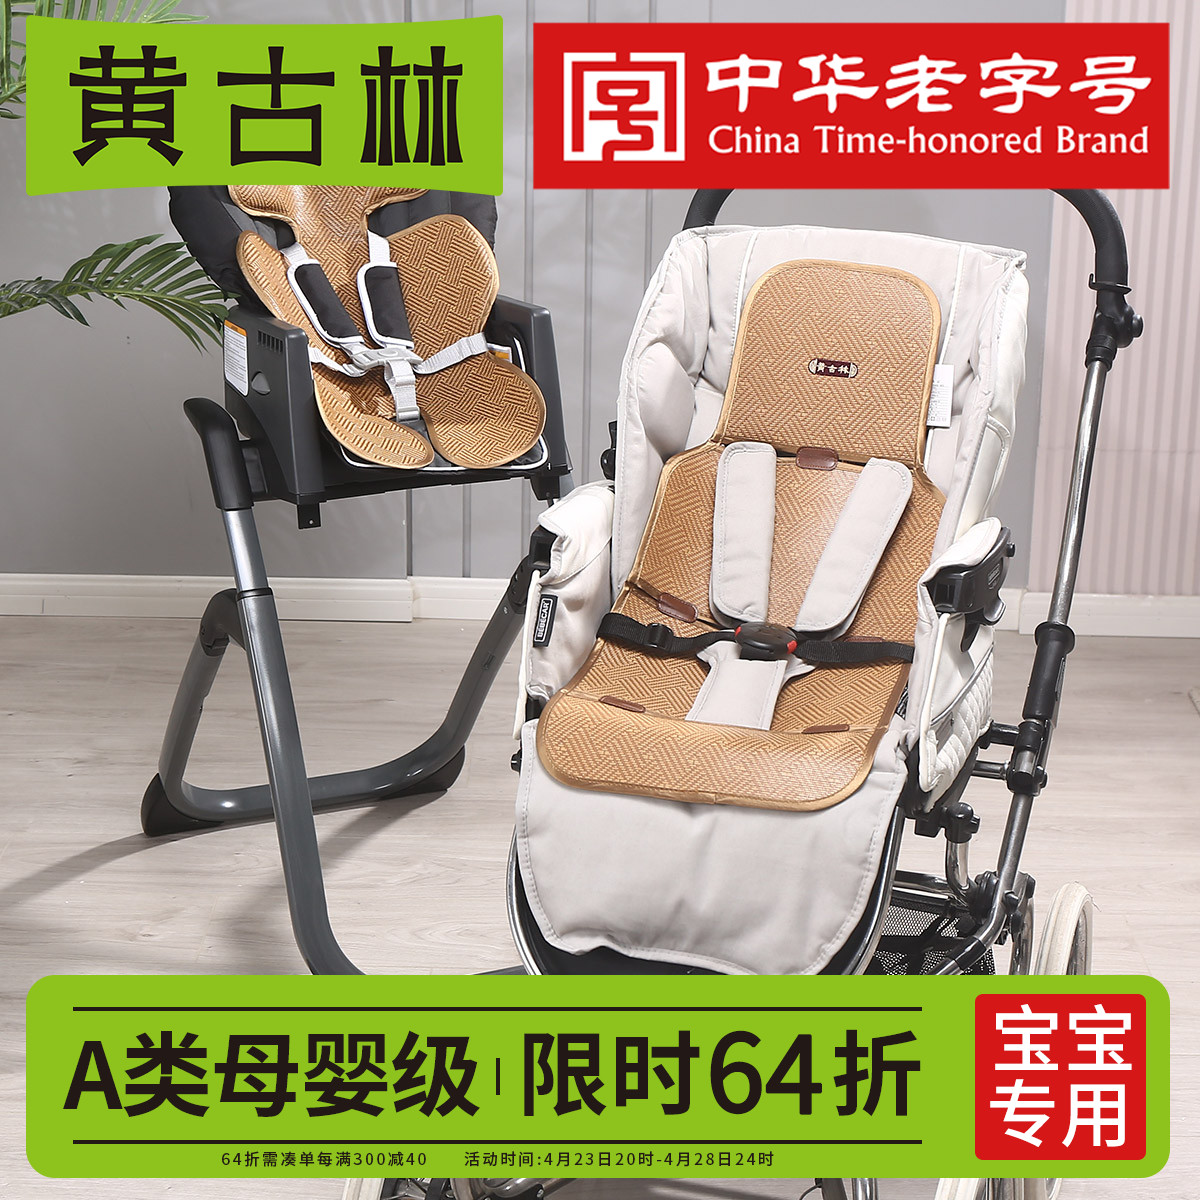 黄古林婴儿车推车凉席餐椅坐垫夏季宝宝安全座椅凉垫通用藤席